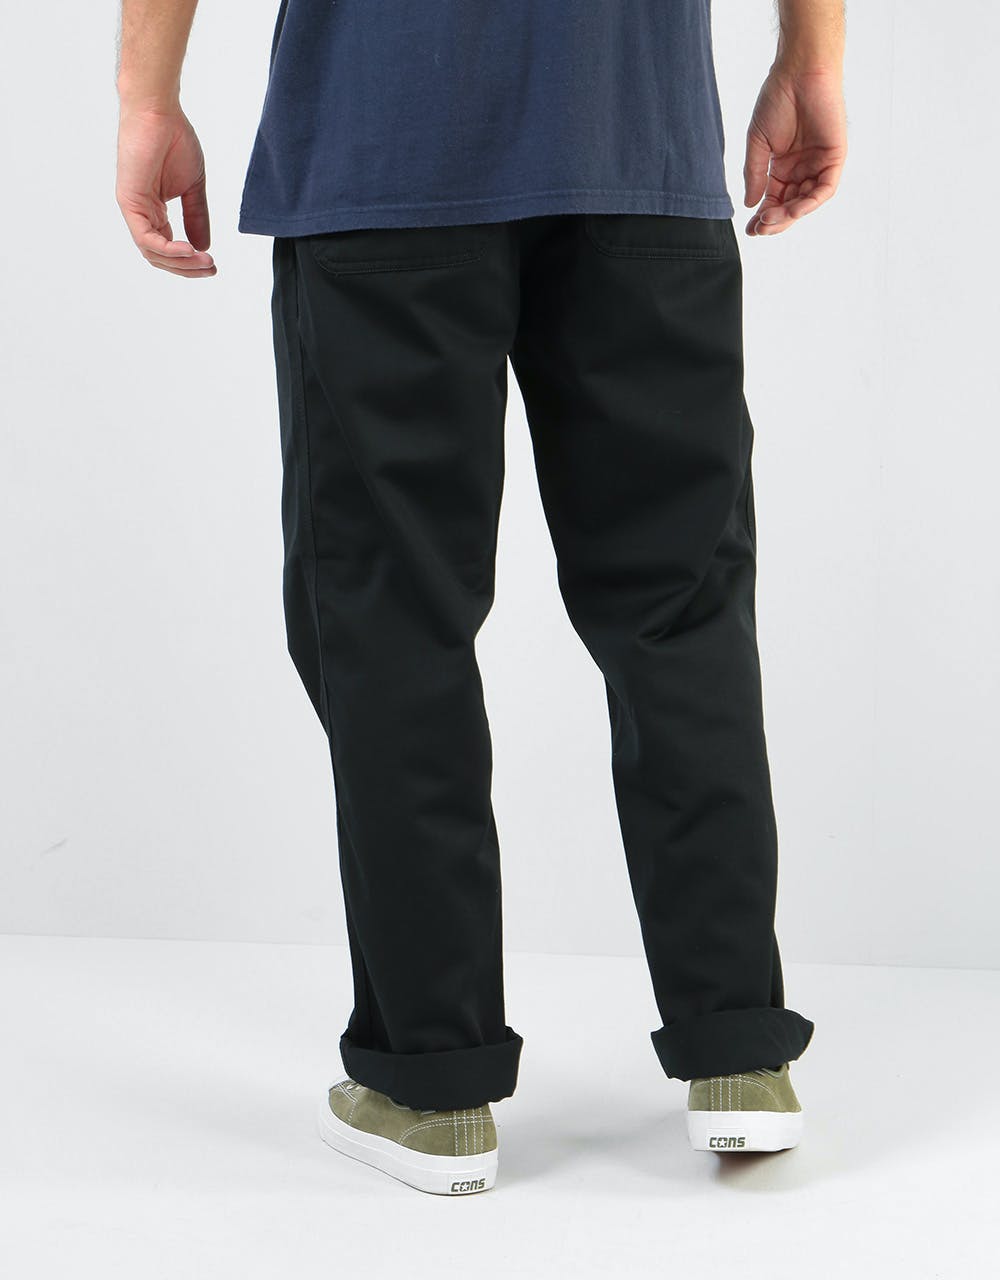 Carhartt WIP Simple Pant - Black (Rinsed)